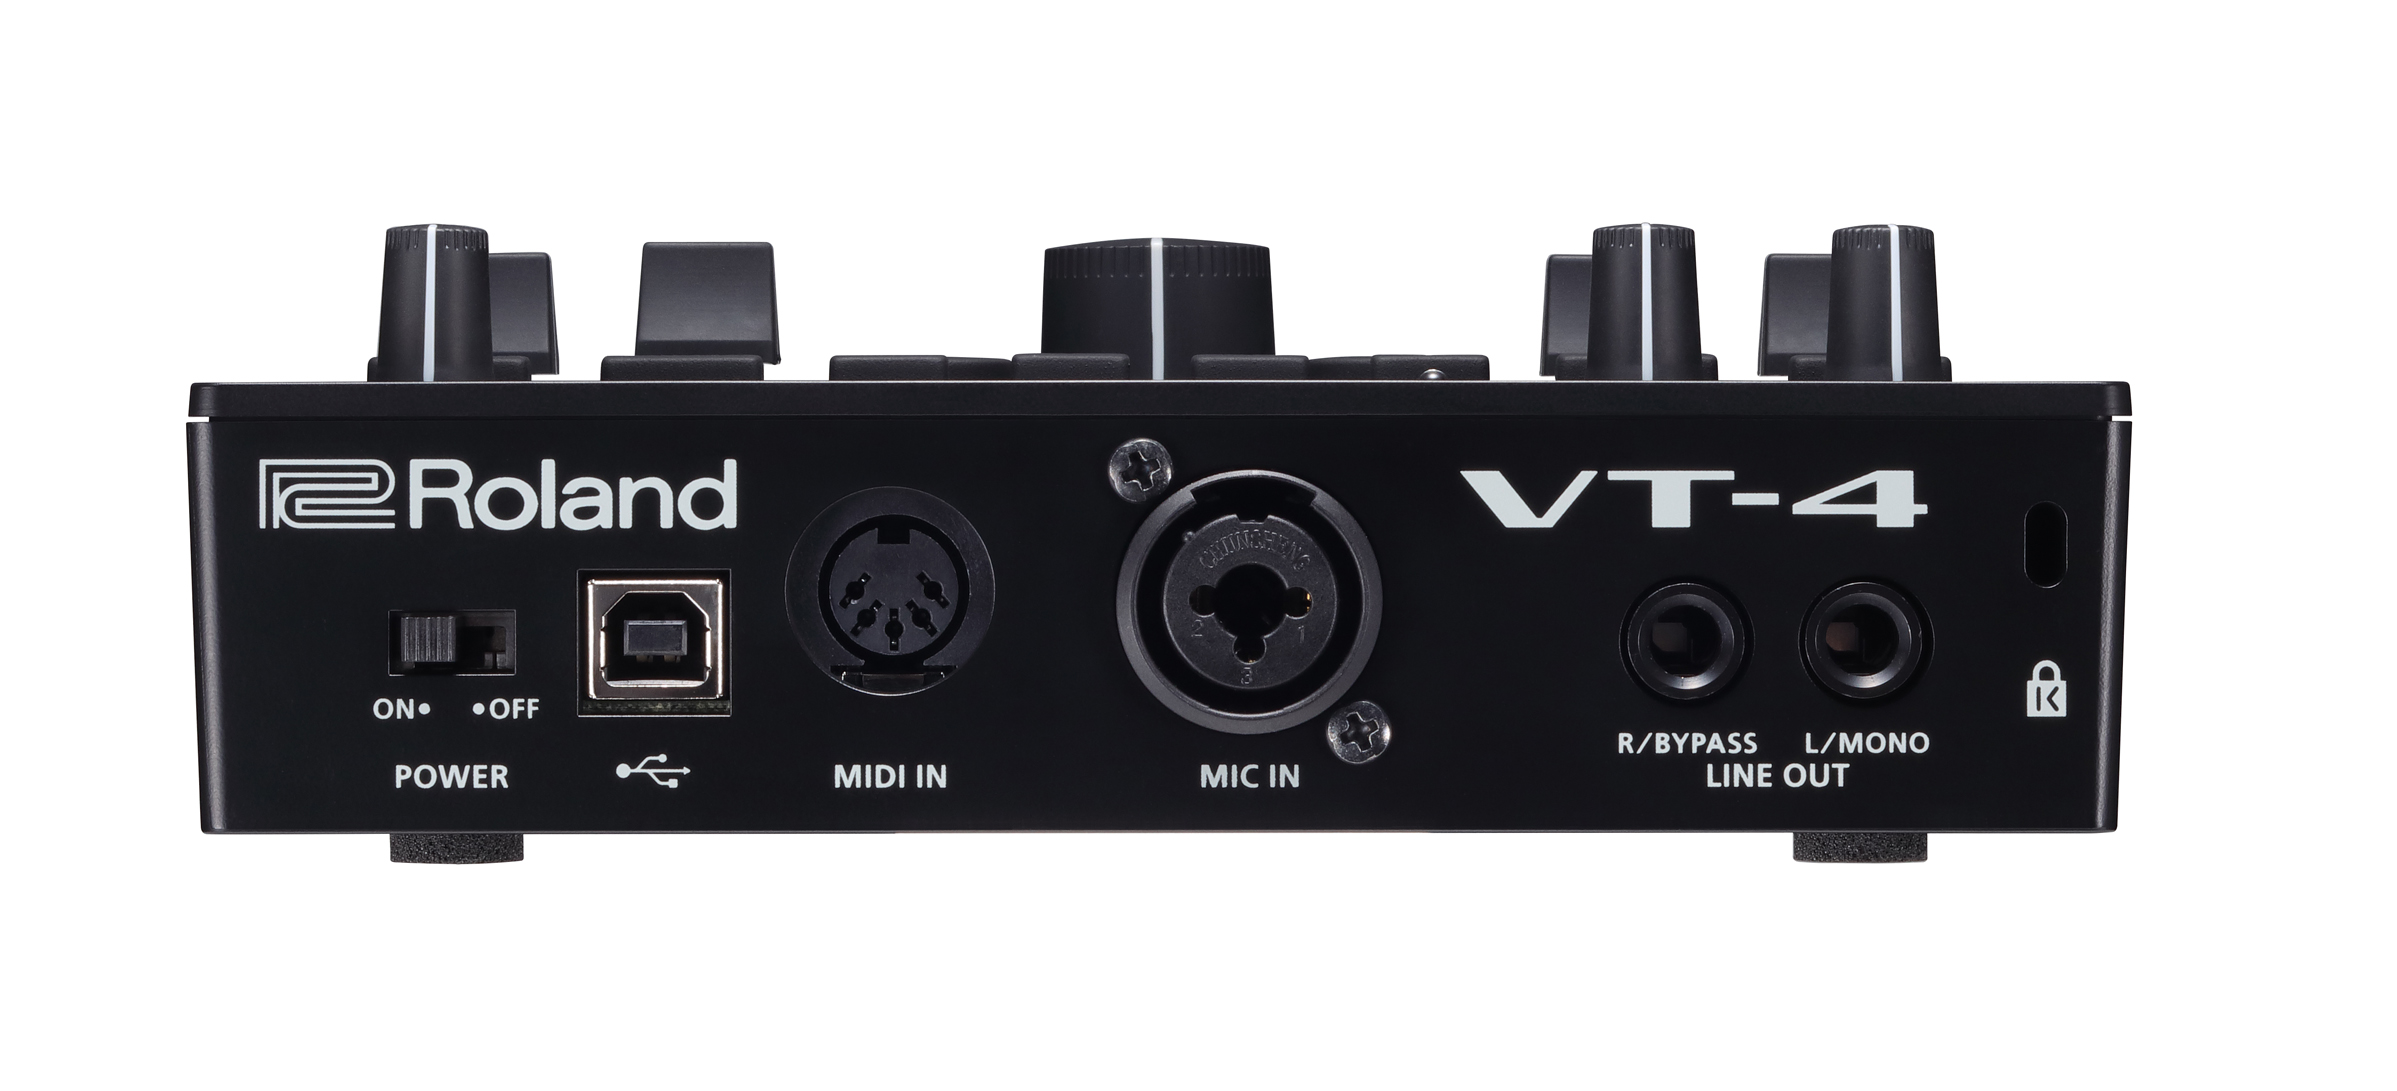 Roland Offers VT-4 Voice Transformer – MusicPlayers.com